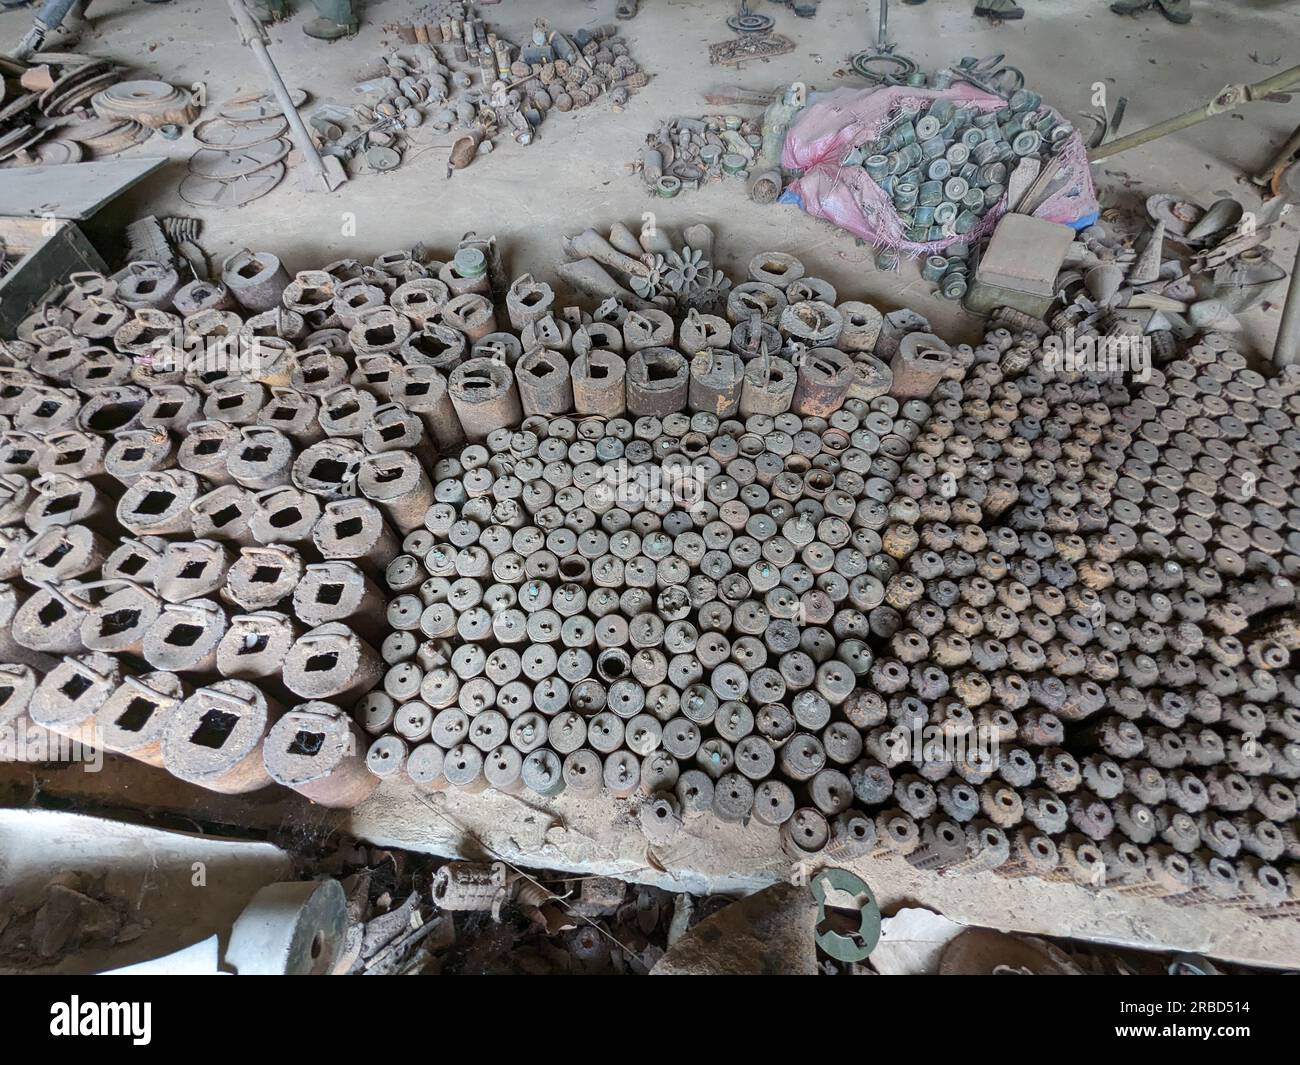 Le mine terrestri inesplose e le bombe a grappolo sono state recuperate in tutta la Cambogia dopo la guerra, ora ambientate nel Museo delle mine terrestri di Siem Reap, Cambogia, enorme amo Foto Stock